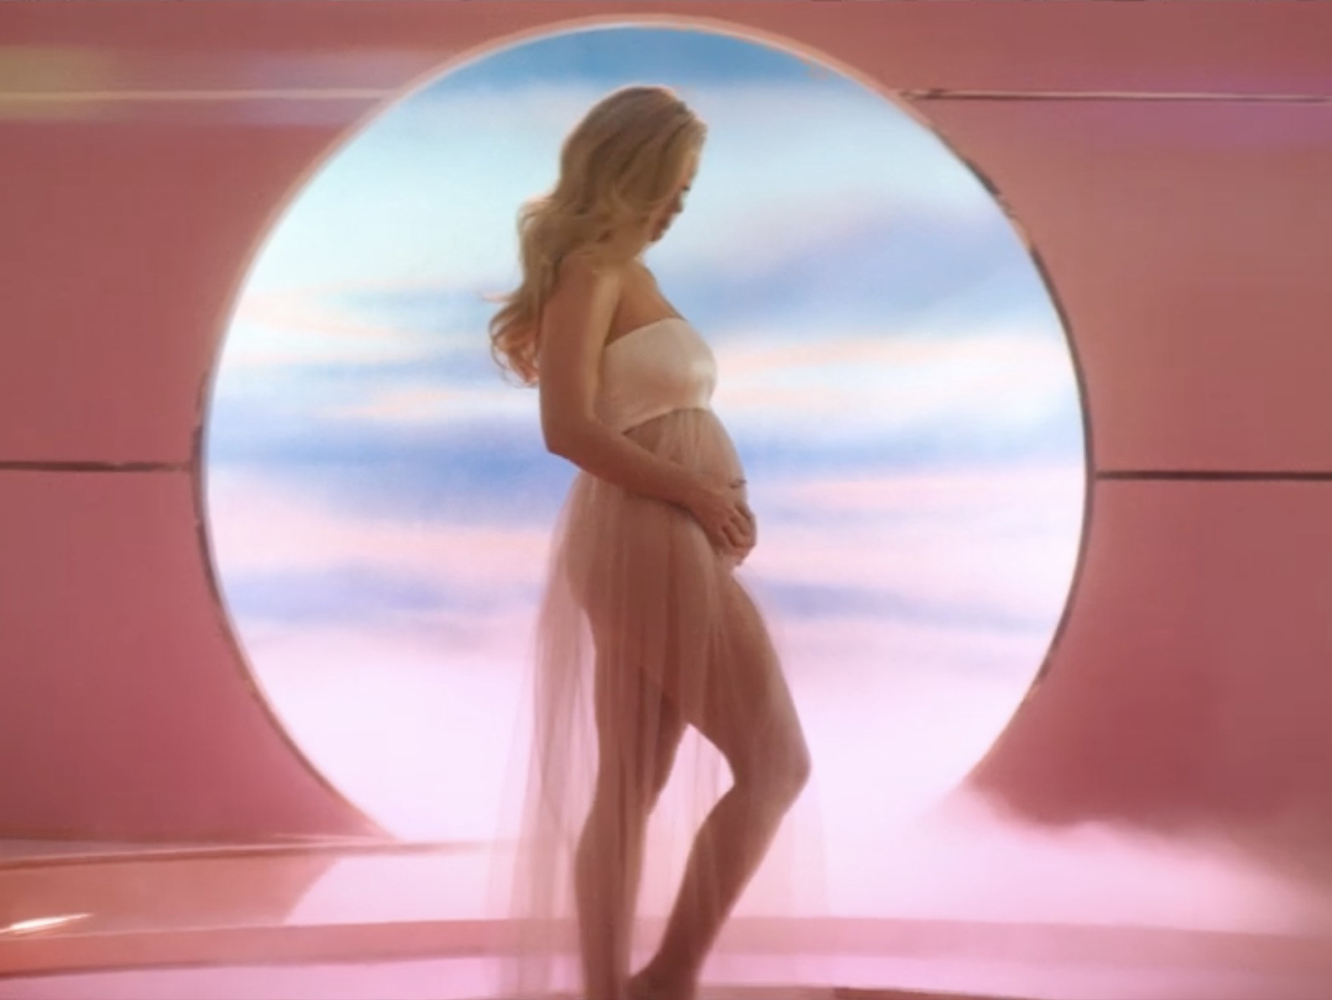  Katy Perry confirma su embarazo en el vídeo de ‘Never Worn White’